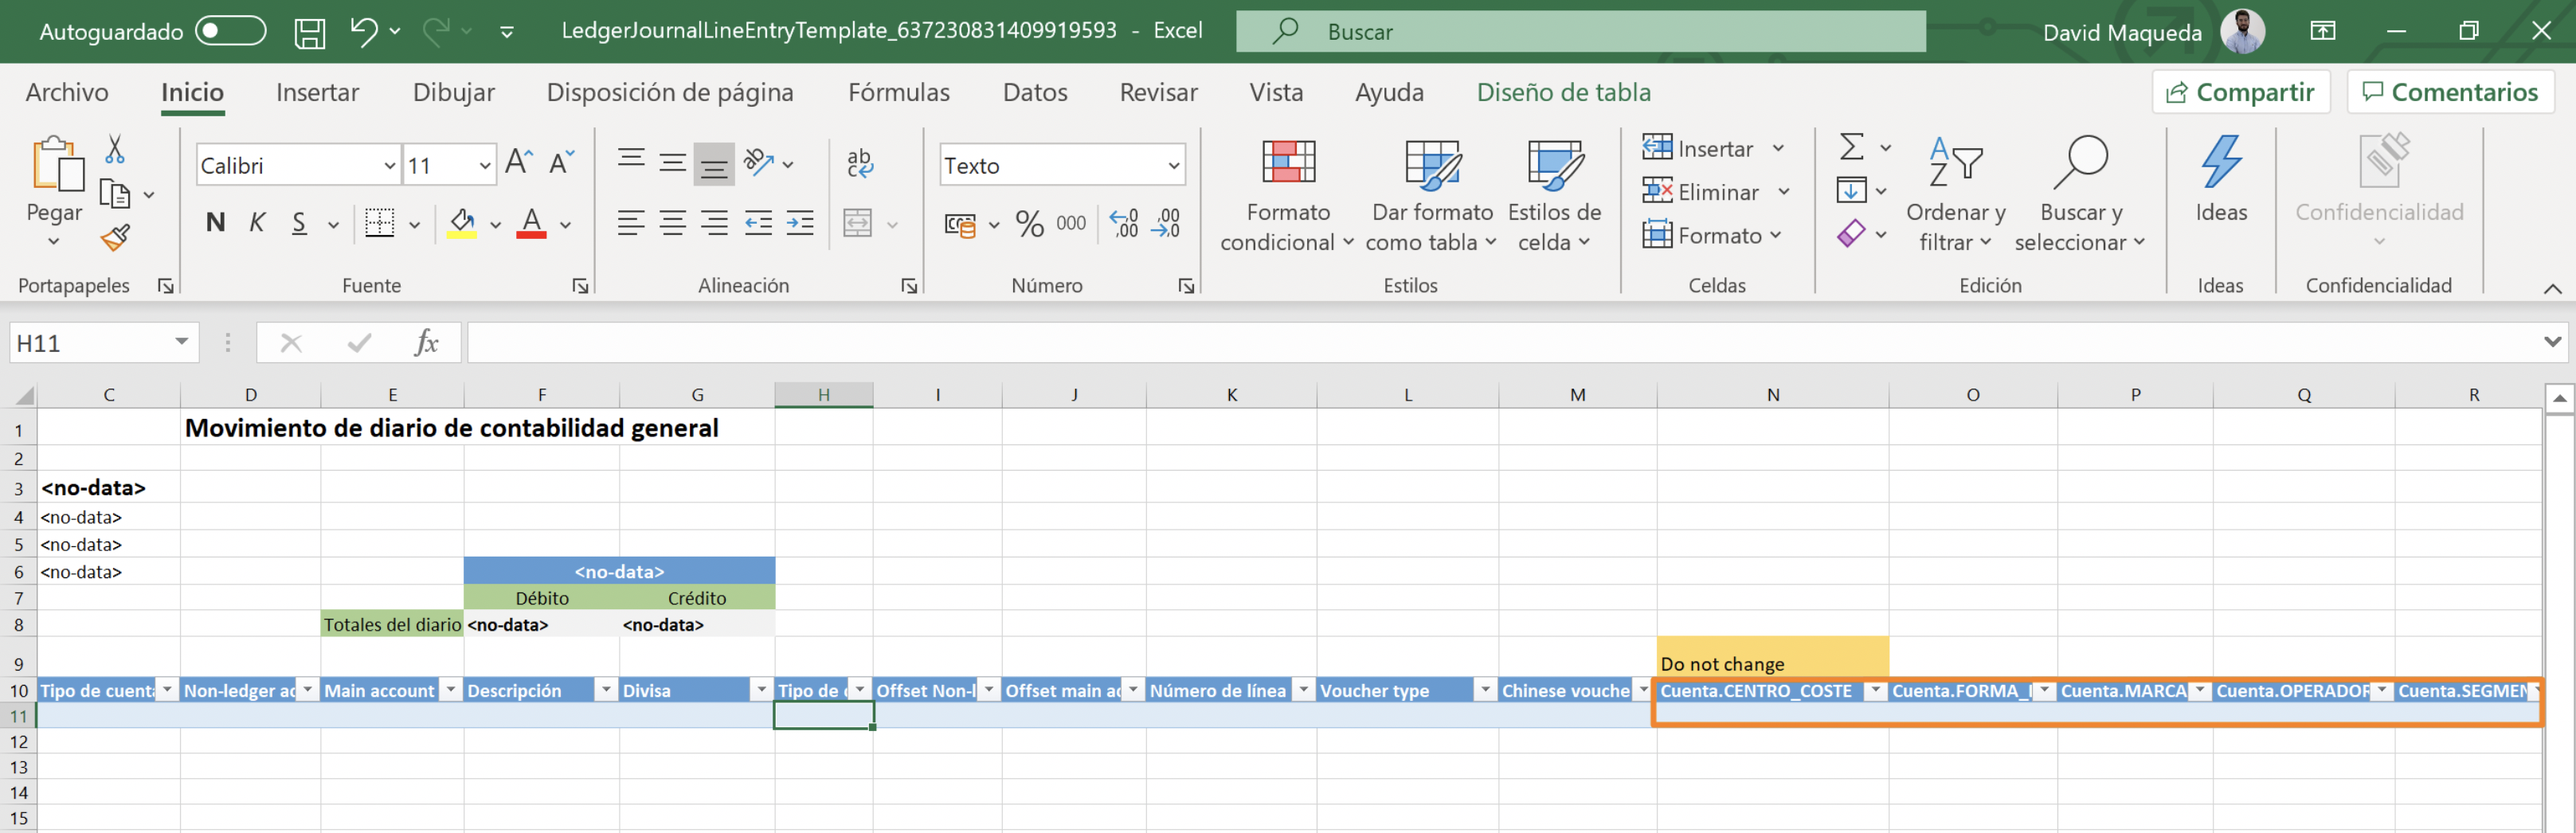 Editar plantillas de Excel para añadir Dimensiones financieras en MSDyn365FO Axazure